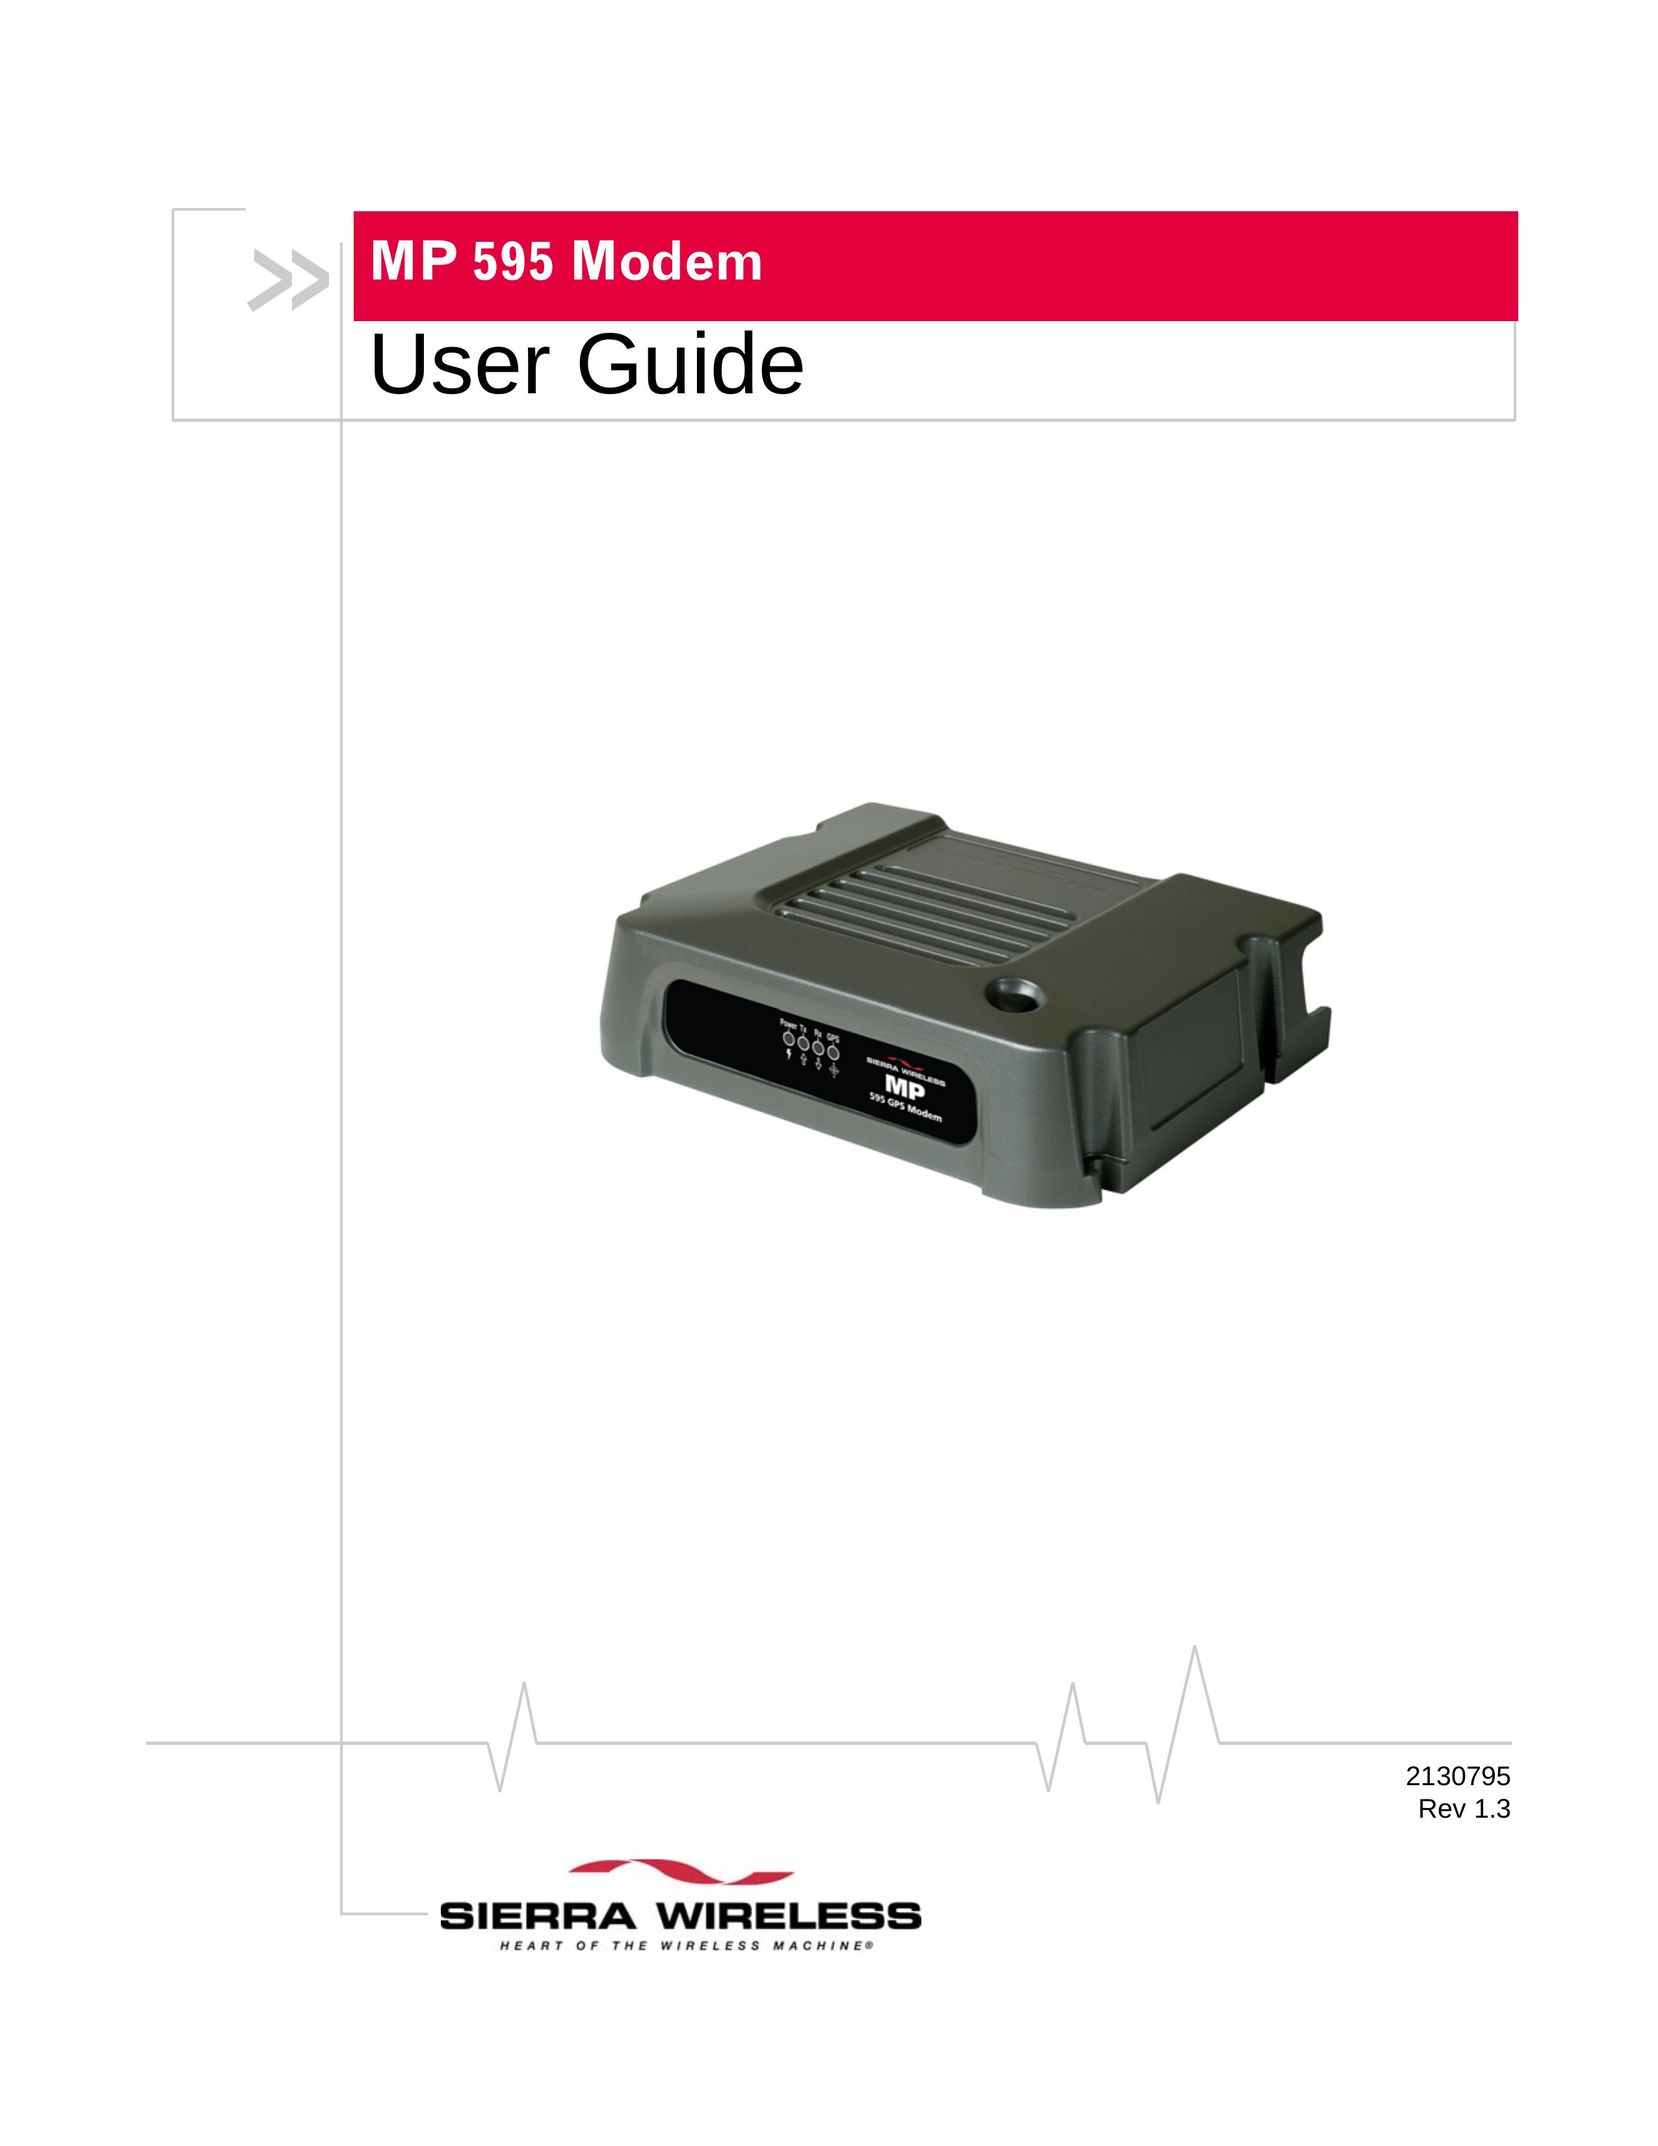 Sierra Wireless MP 595 Network Card User Manual